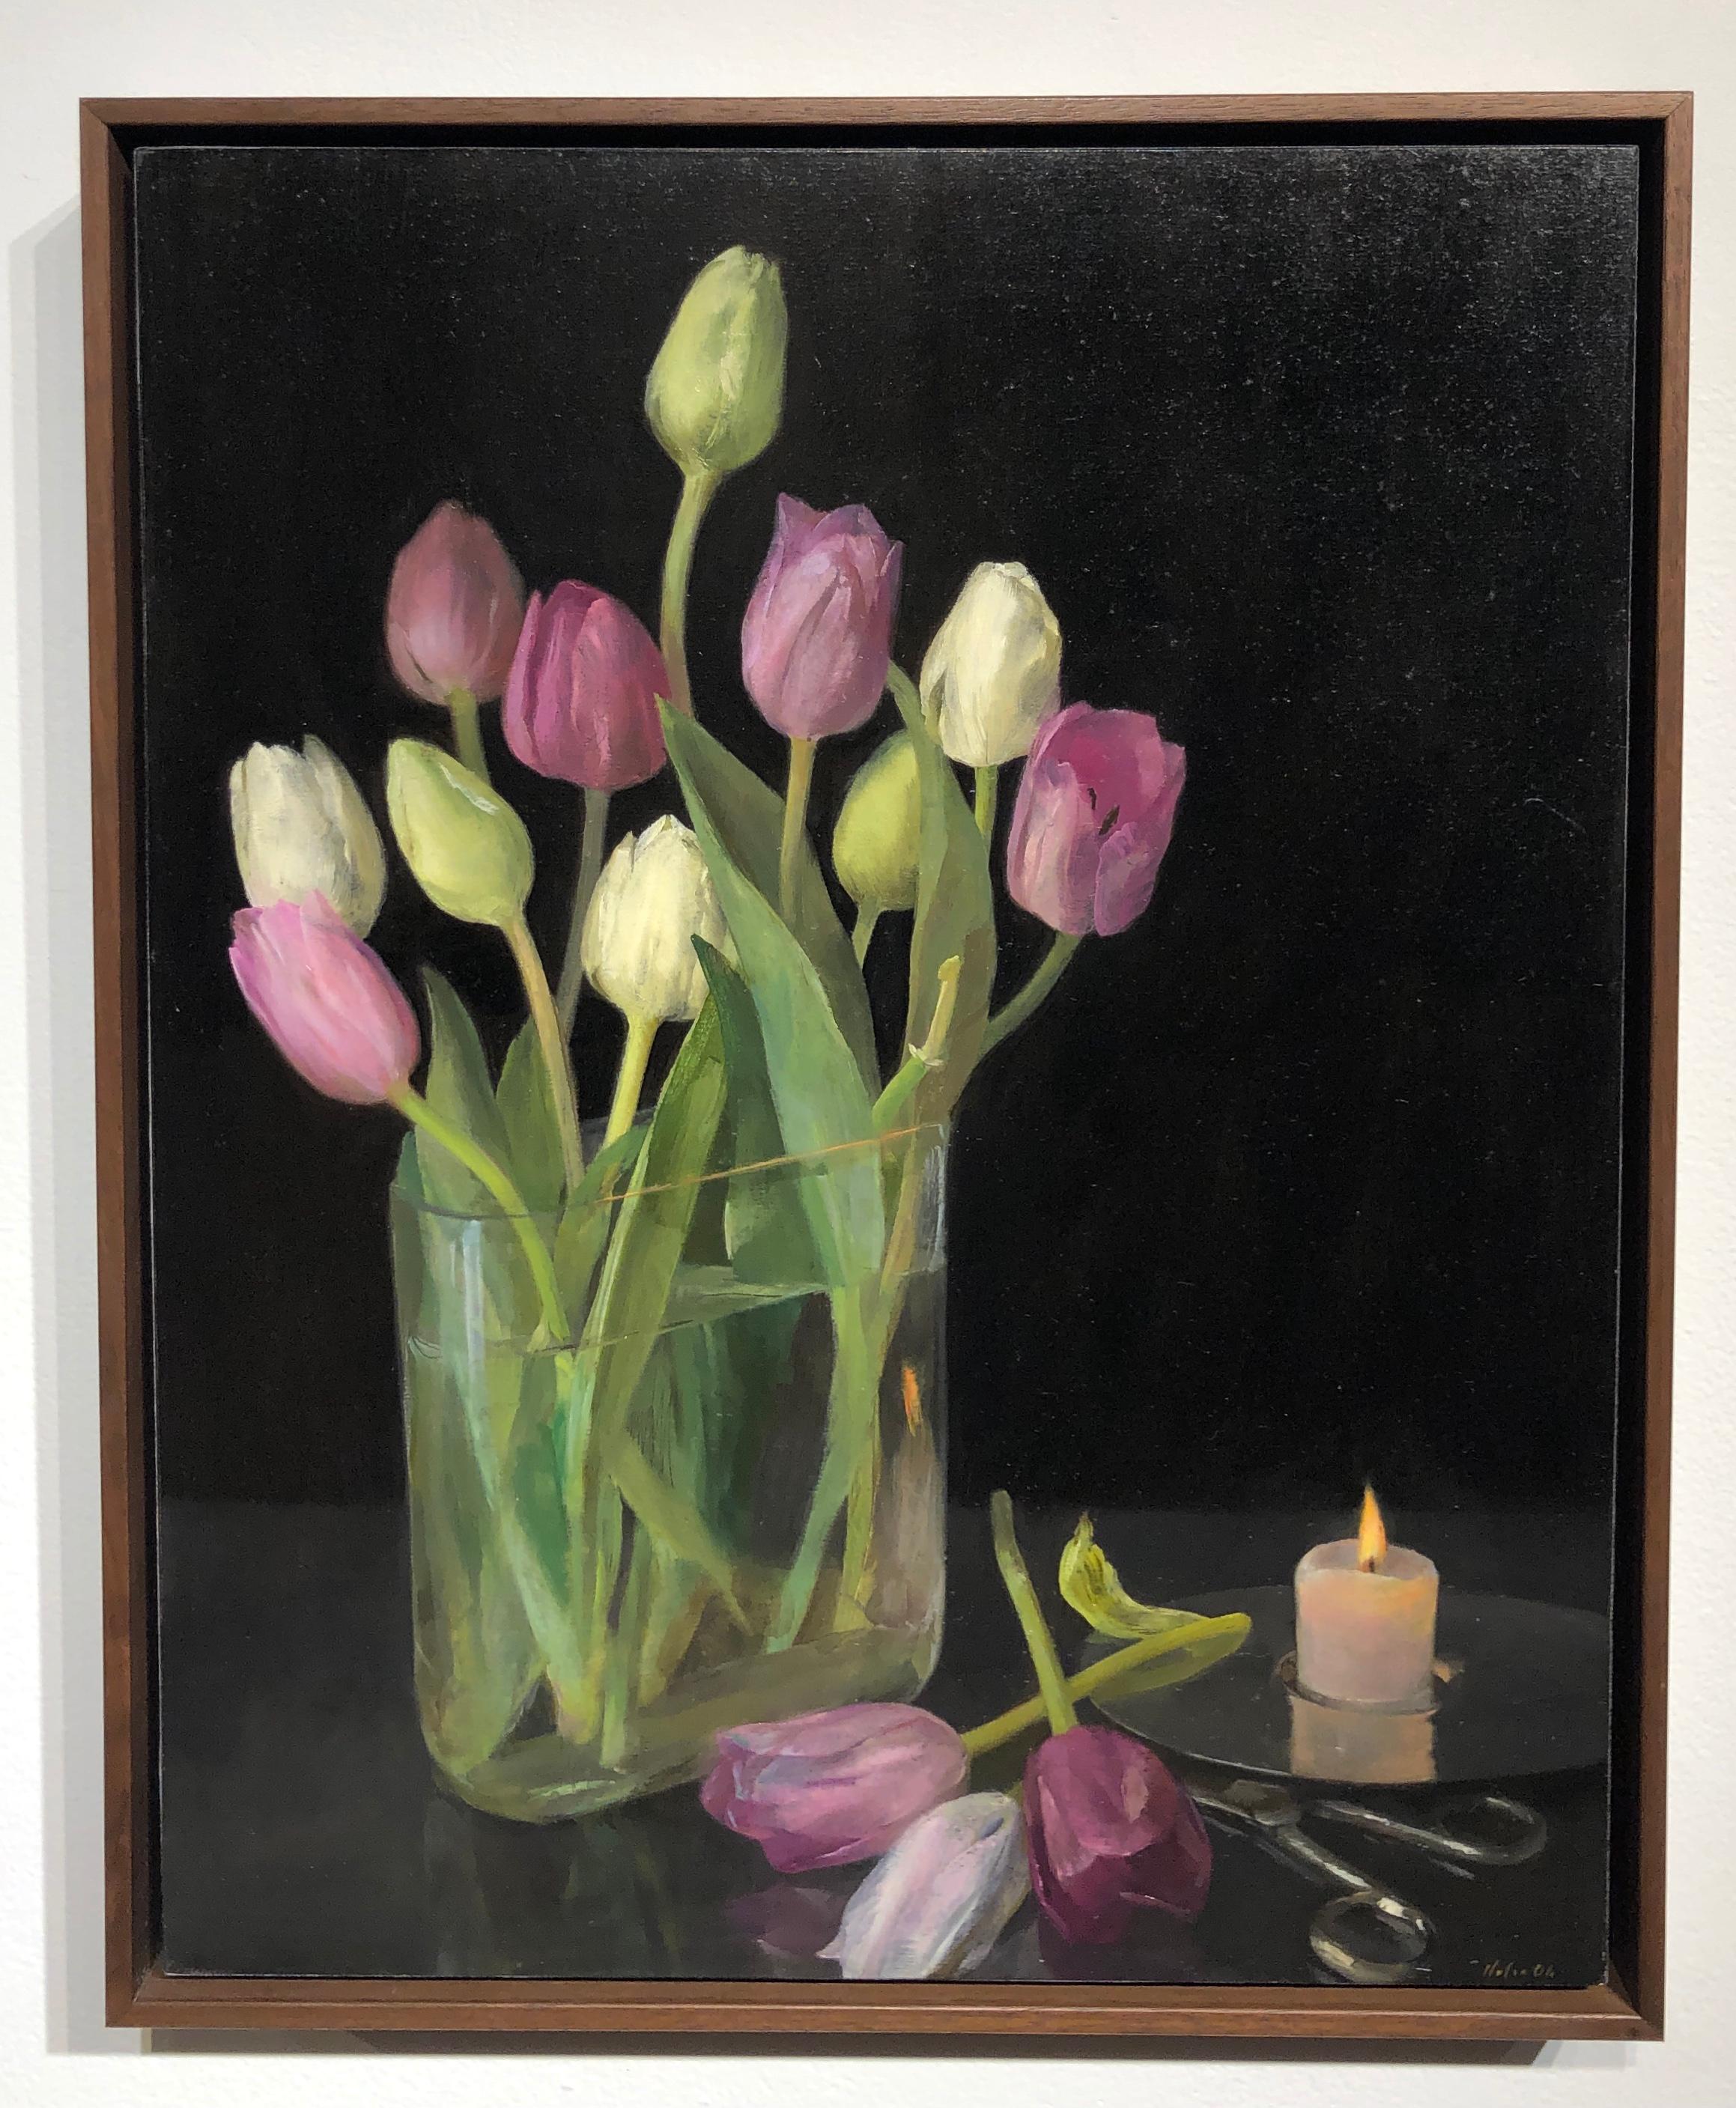 Nature morte aux tulipes, vase en verre de tulipes pastel, ciseaux et bougie allumée - Painting de Helen Oh